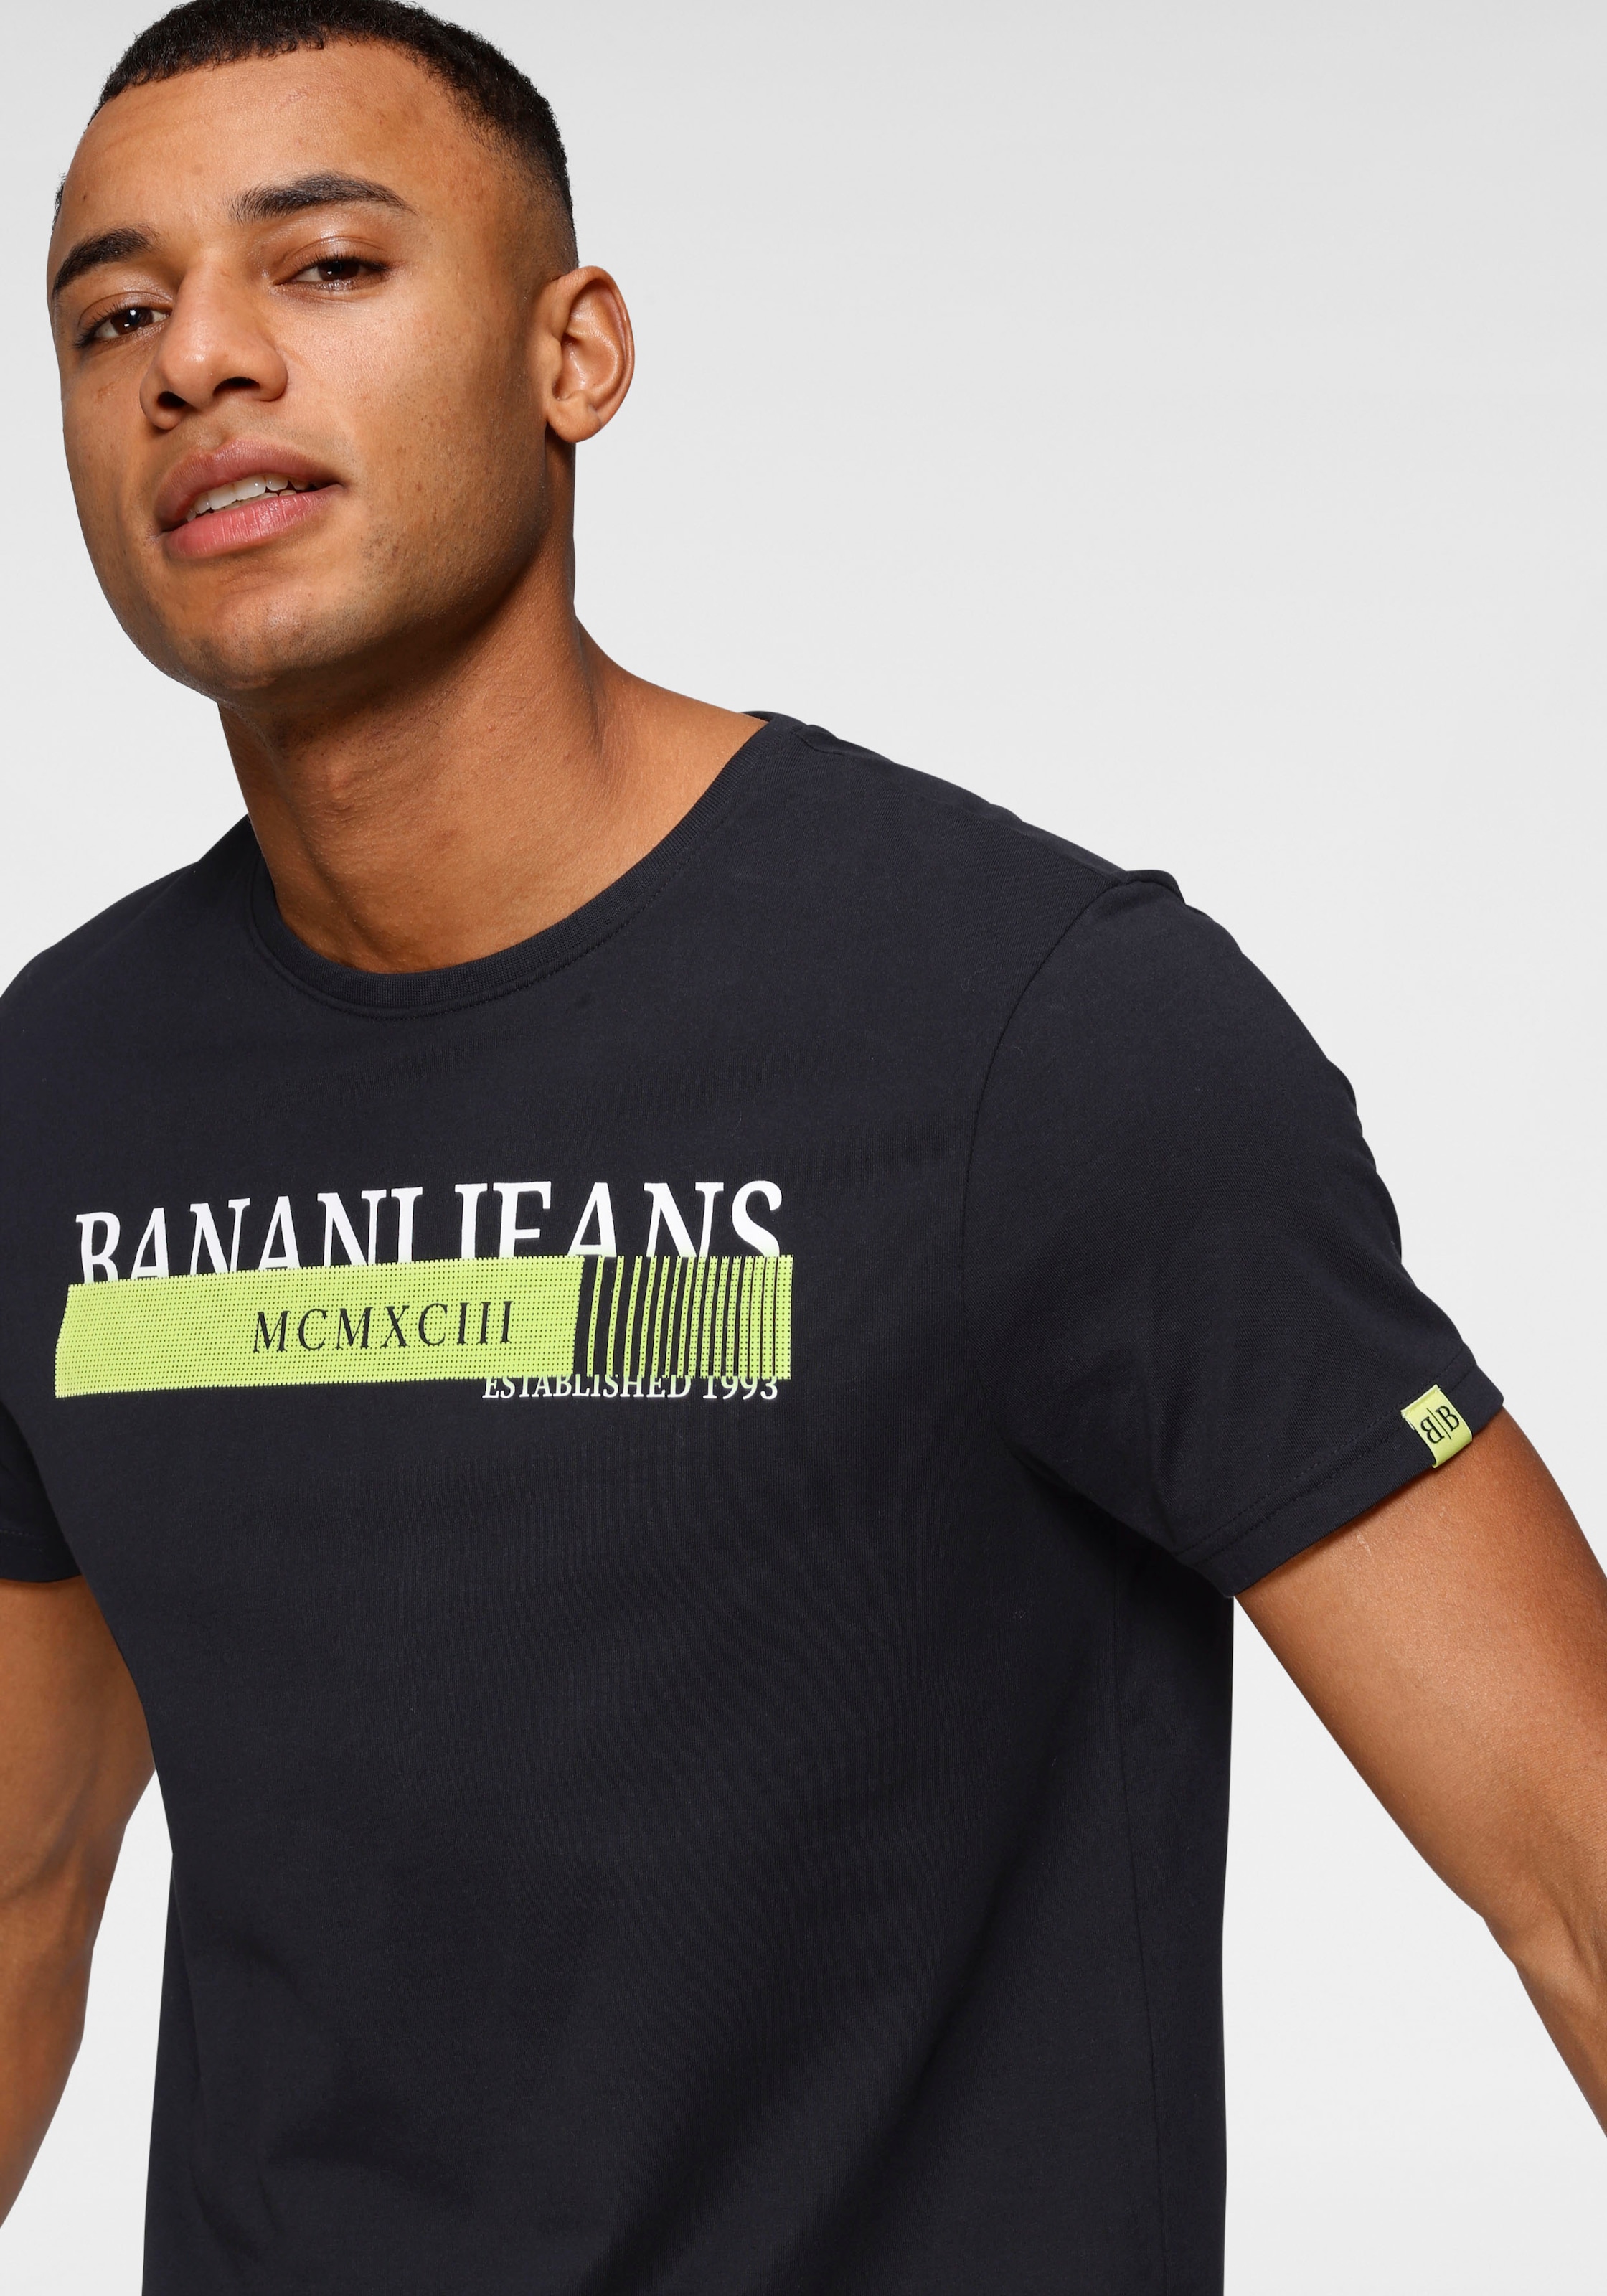 Bruno Banani T-Shirt, mit neonfarbenen Print shoppen online bei OTTO